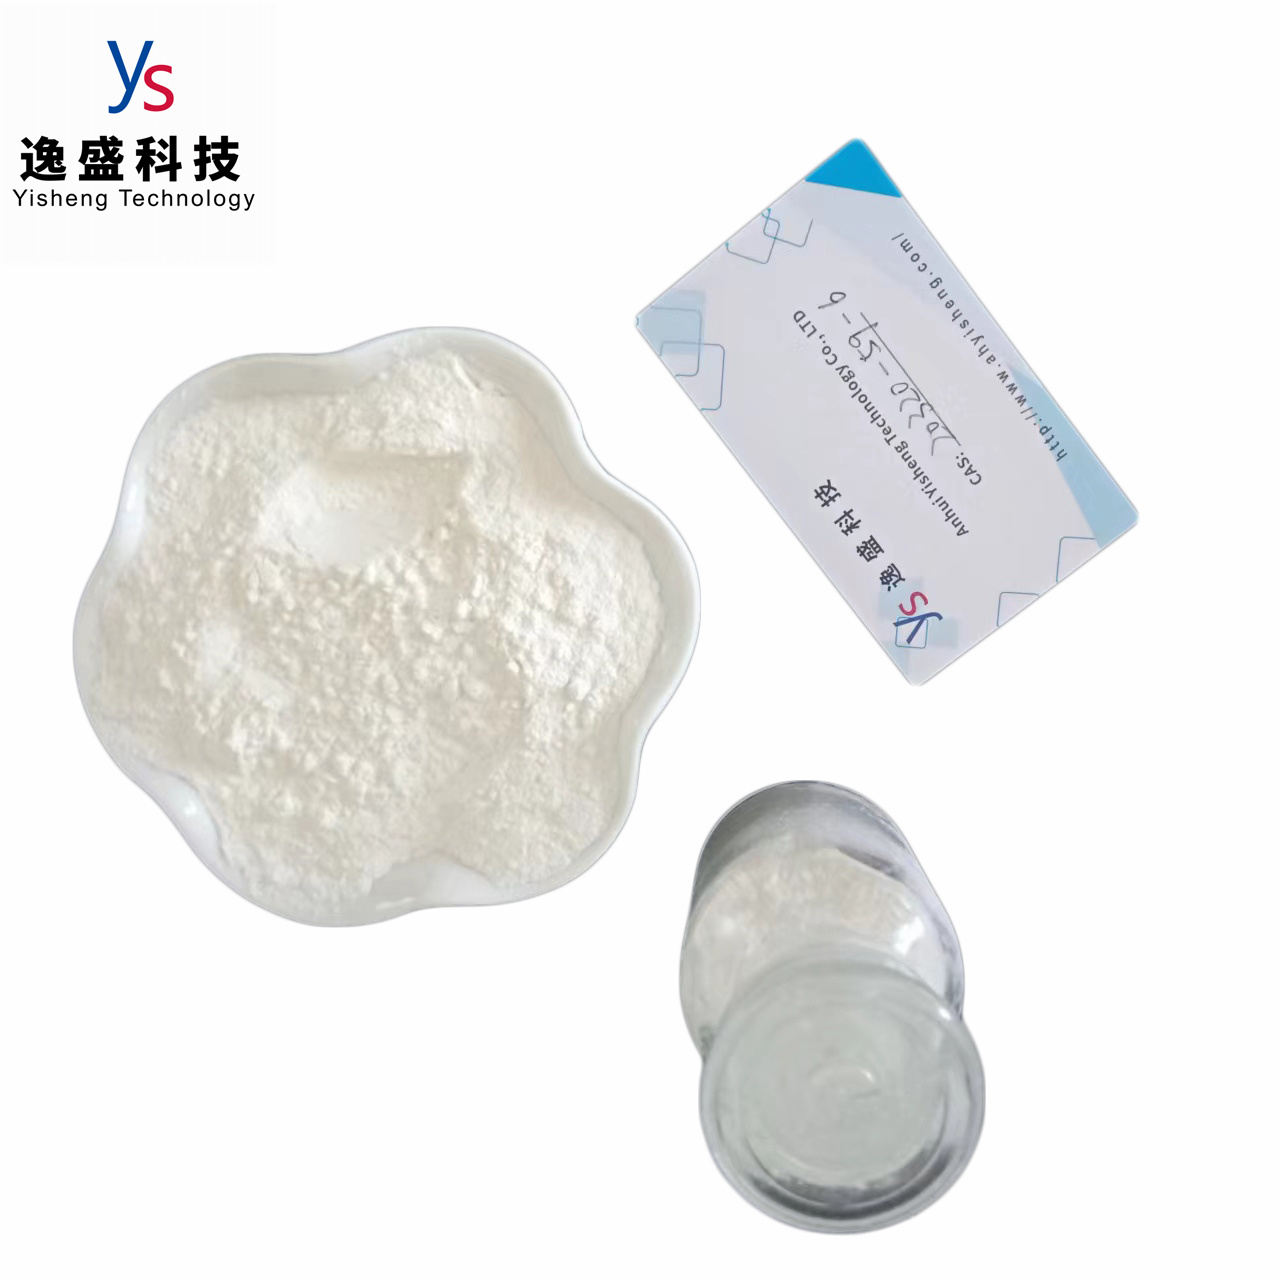 CAS 20320-59-6 Wholesale Pmk powder